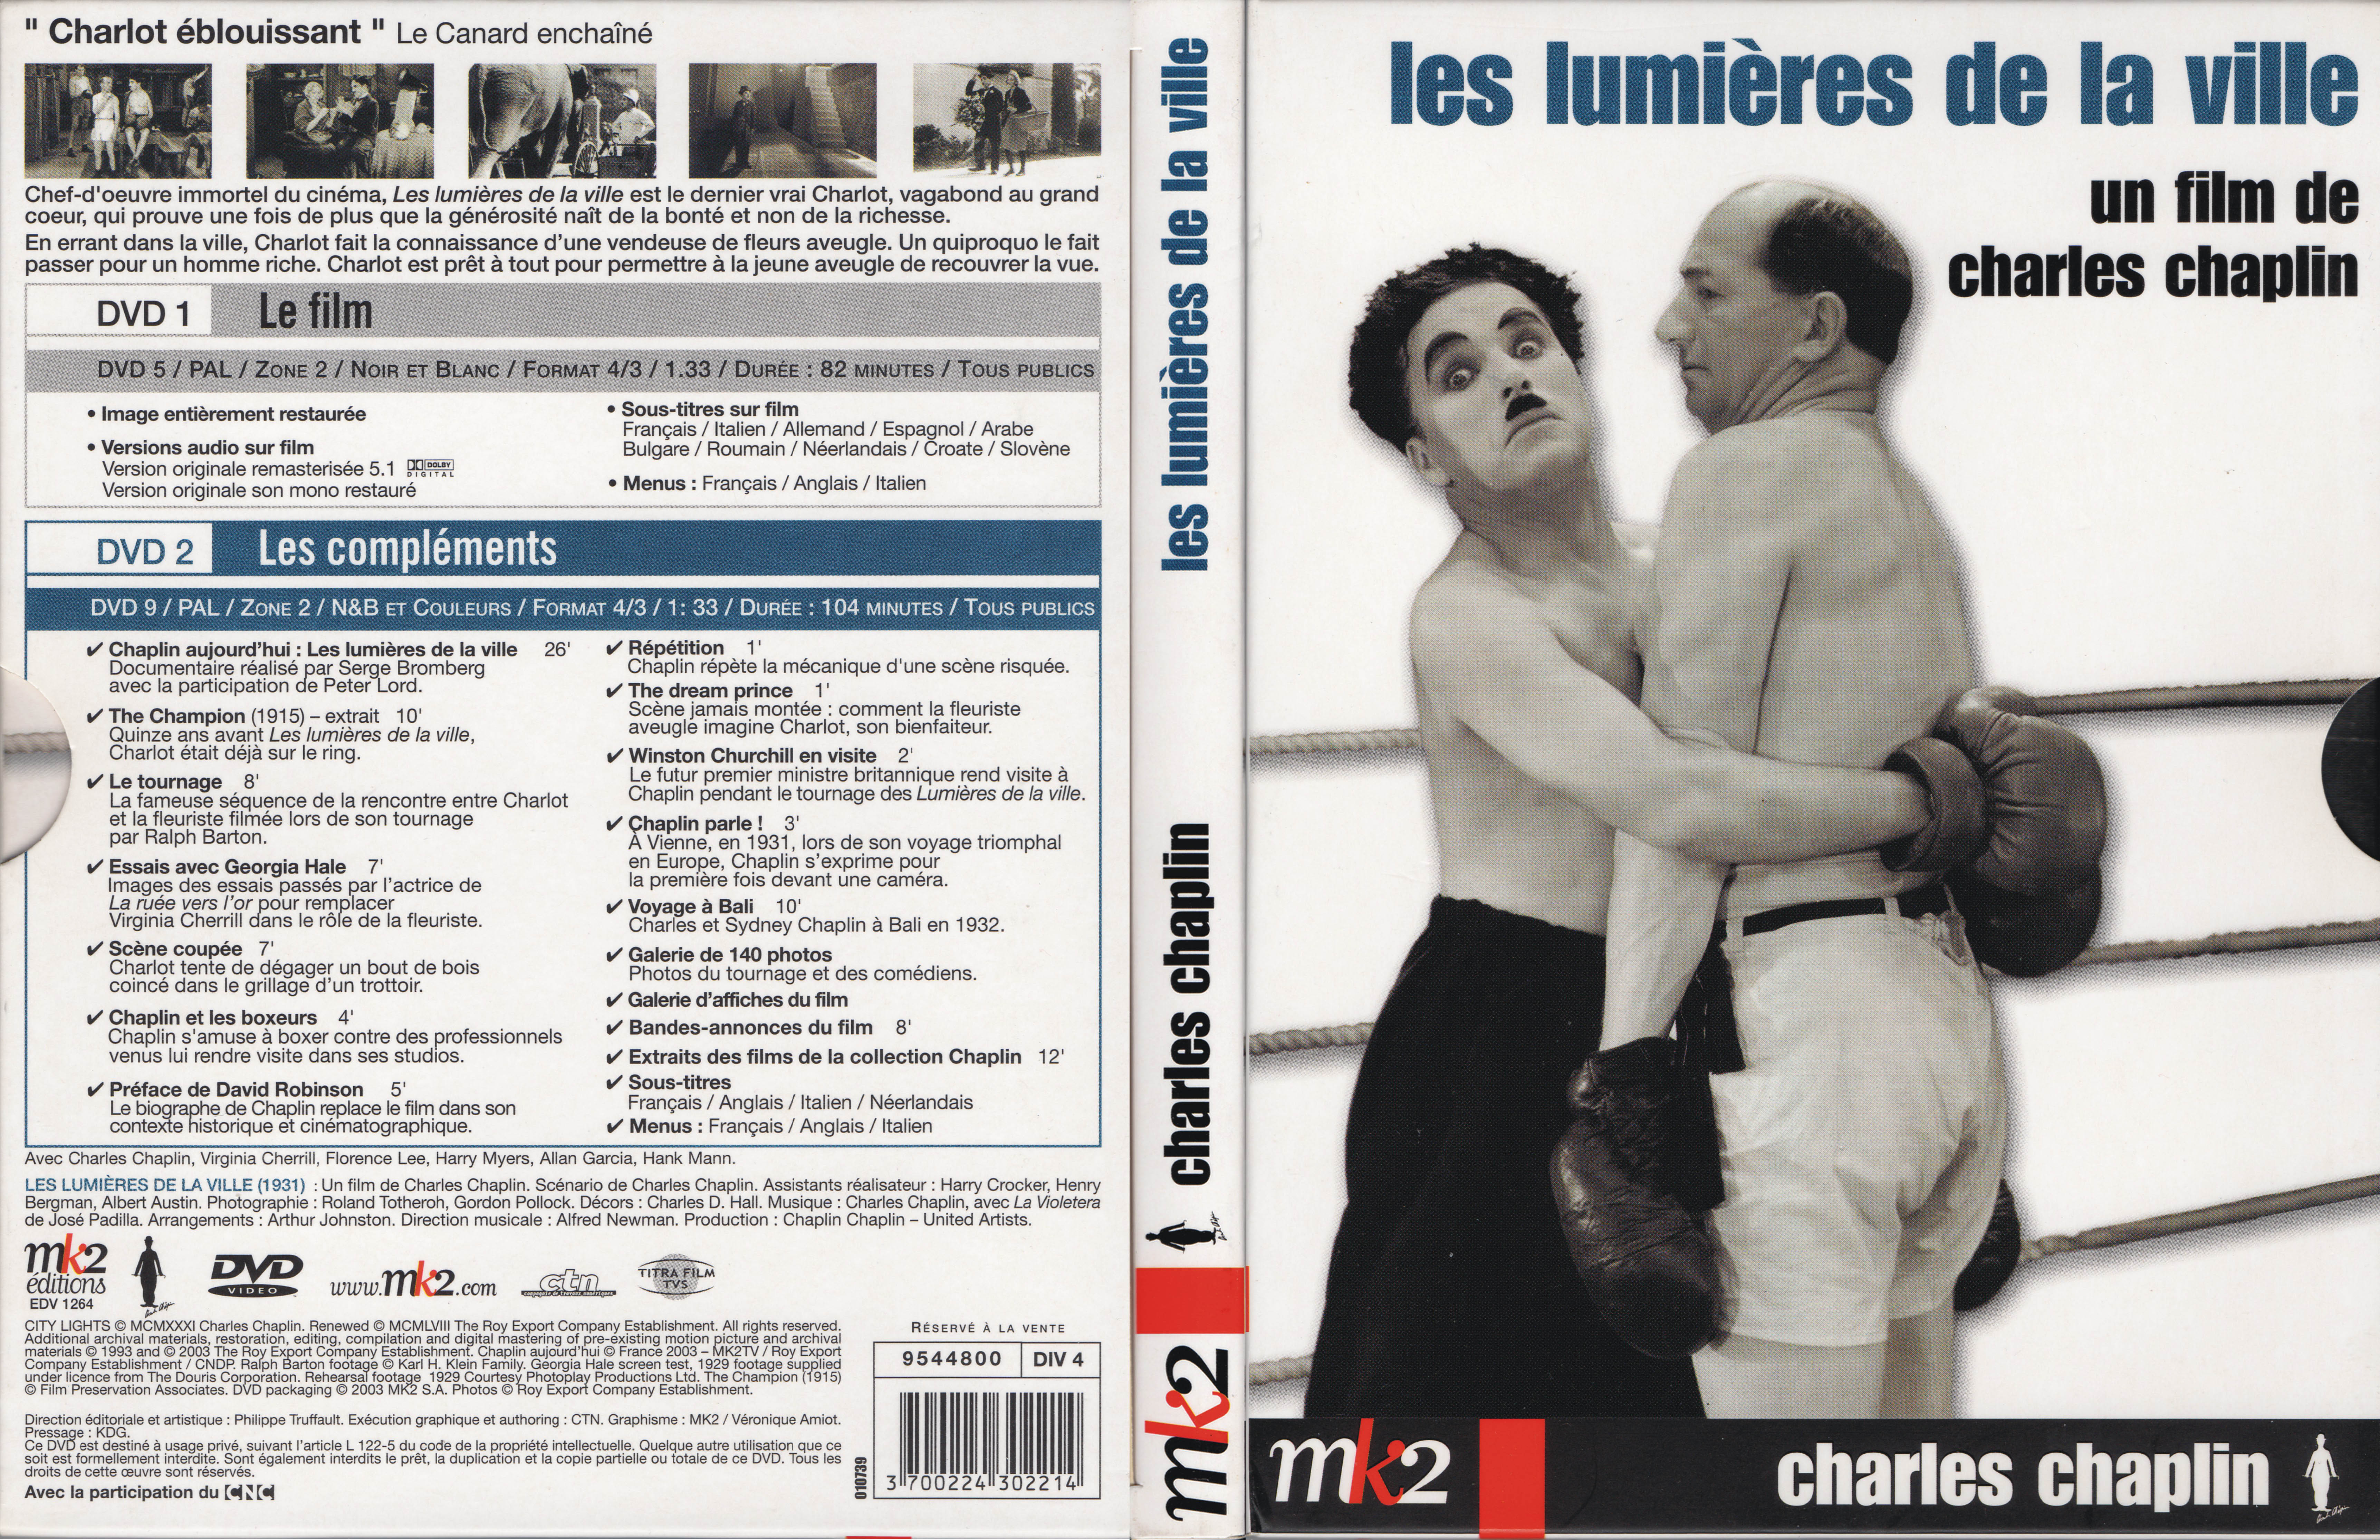 Jaquette DVD Les lumires de la ville v2